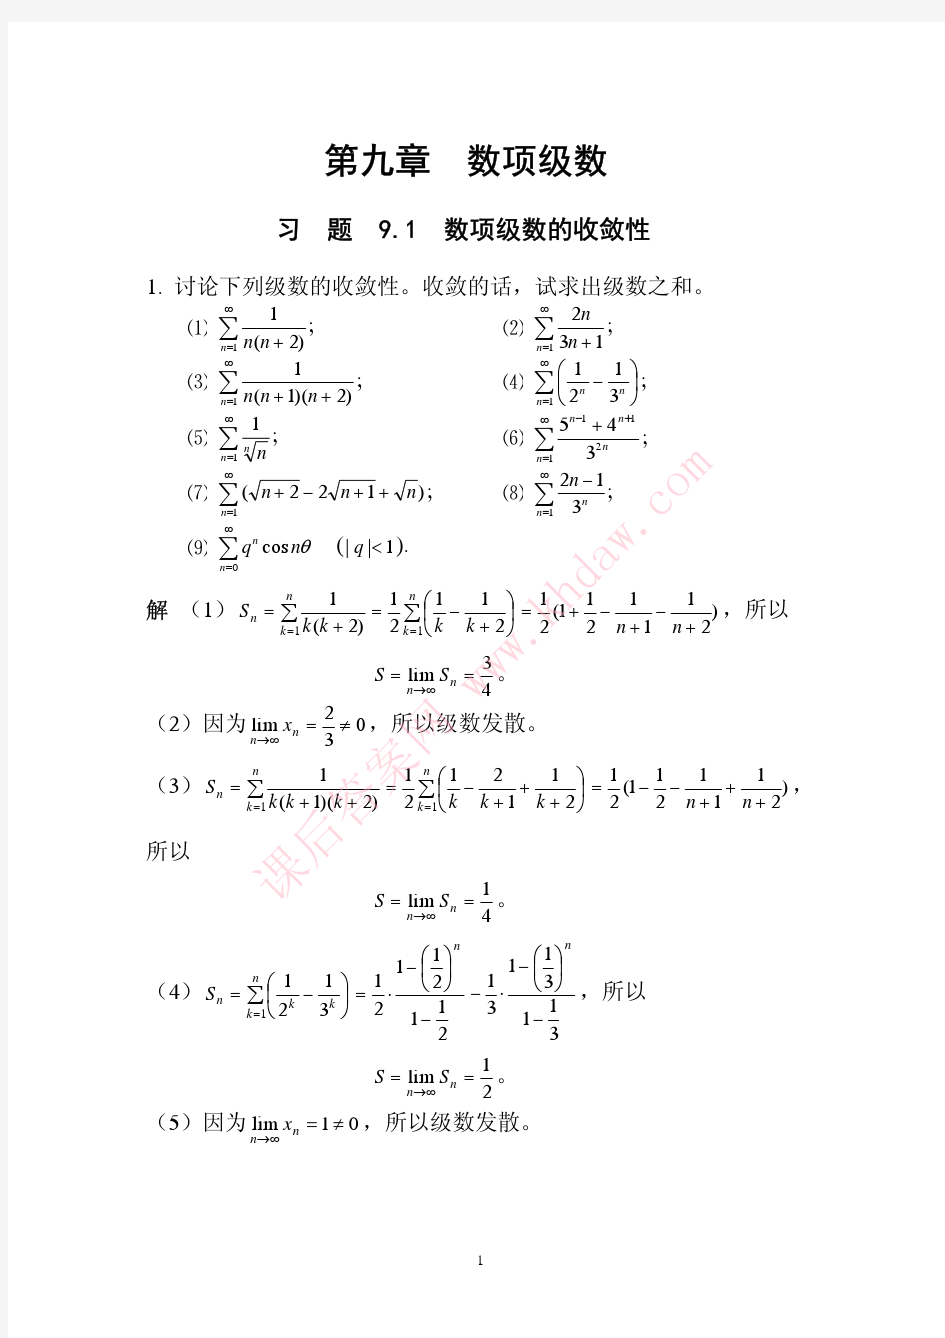 数学分析课后习题答案--高教第二版(陈纪修)--9章